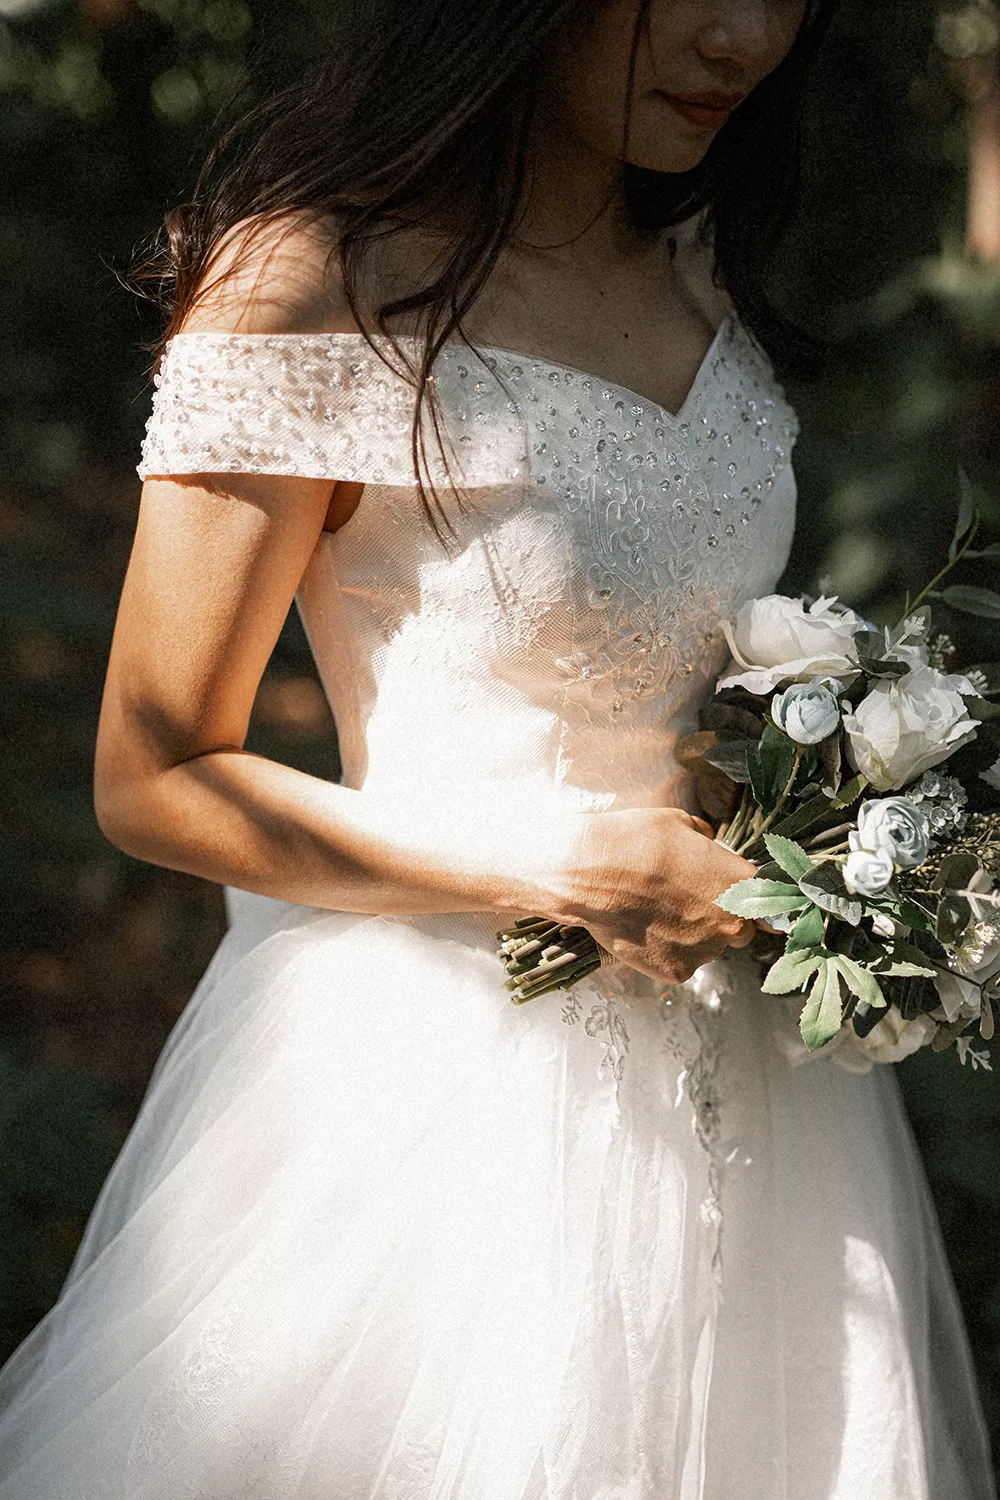 一字領婚紗樣式展現簡約的高貴美感。